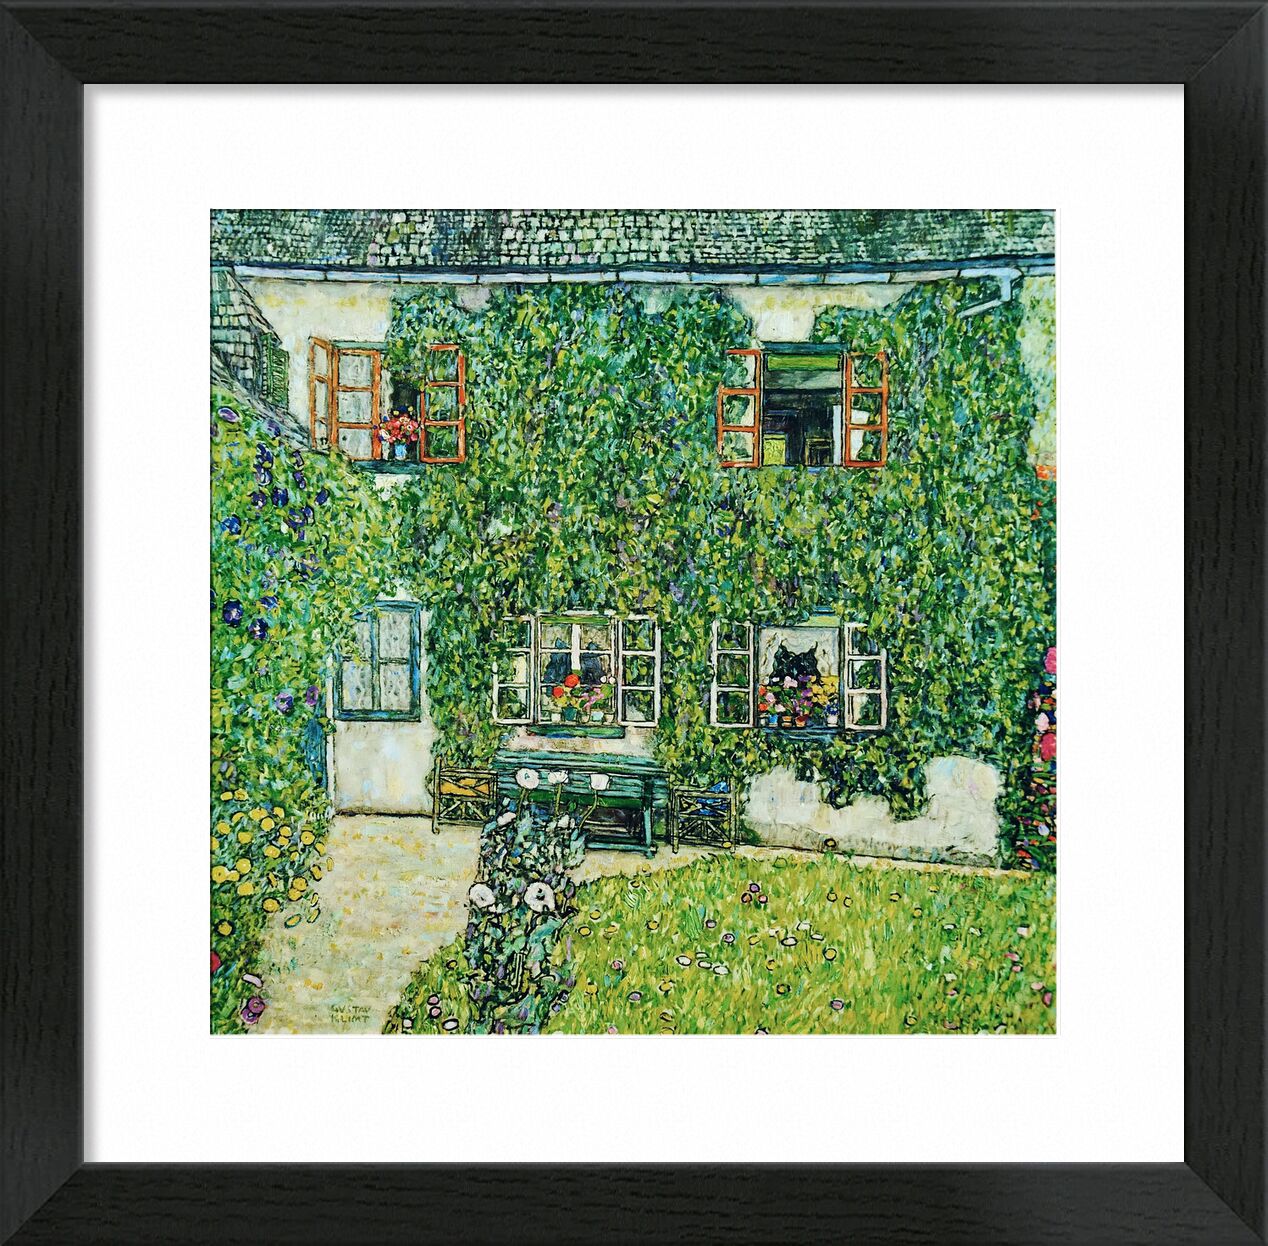 Forestry House in Weissenbach on Attersee-Lake - Gustav Klimt von Bildende Kunst, Prodi Art, KLIMT, Haus, Landschaft, Natur, Villa